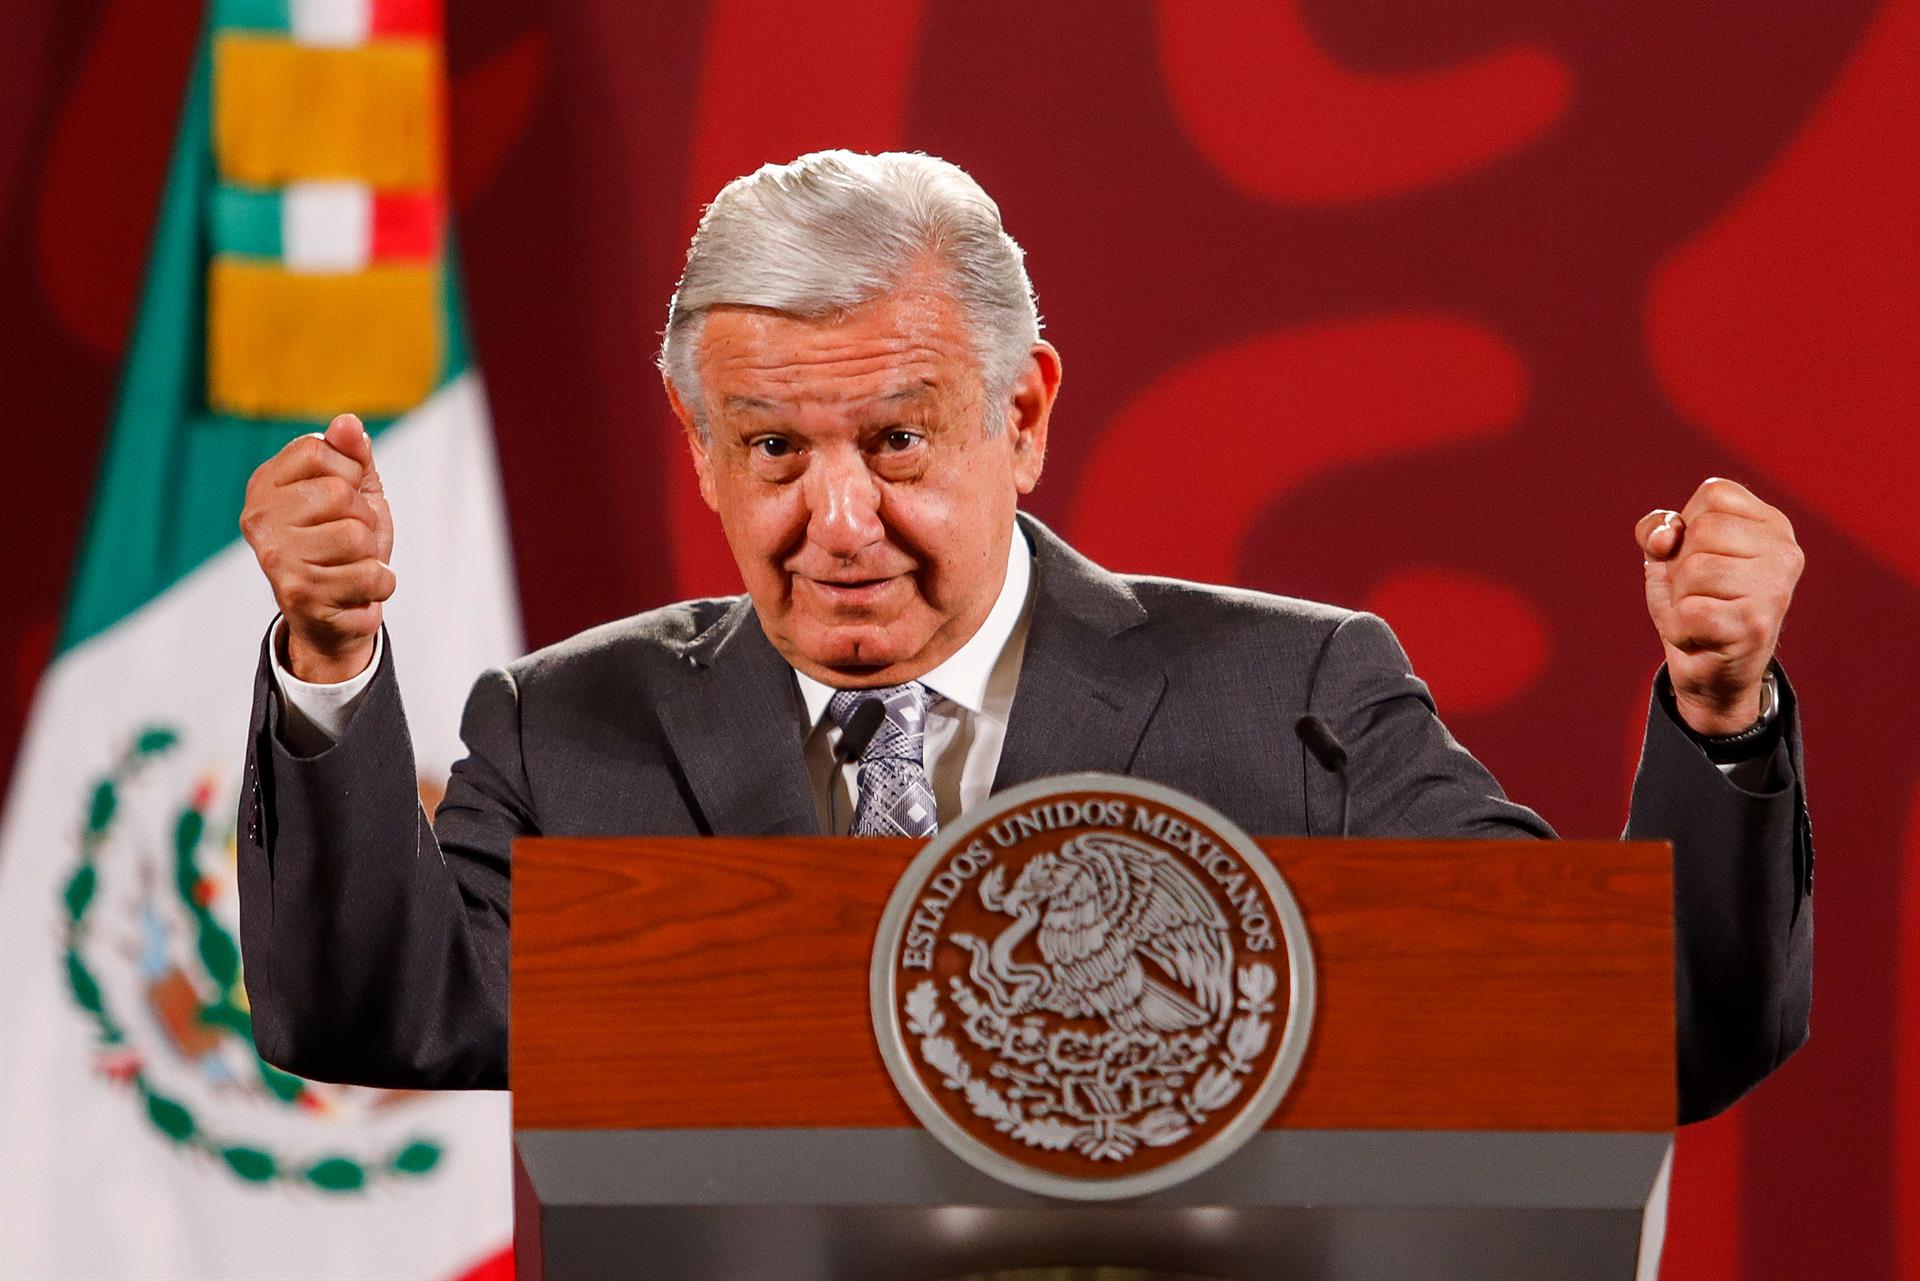 El presidente de México Andrés Manuel López Obrador participa este lunes durante una rueda de prensa en el Palacio Nacional, hoy en Ciudad de México (México). EFE/Isaac Esquivel
